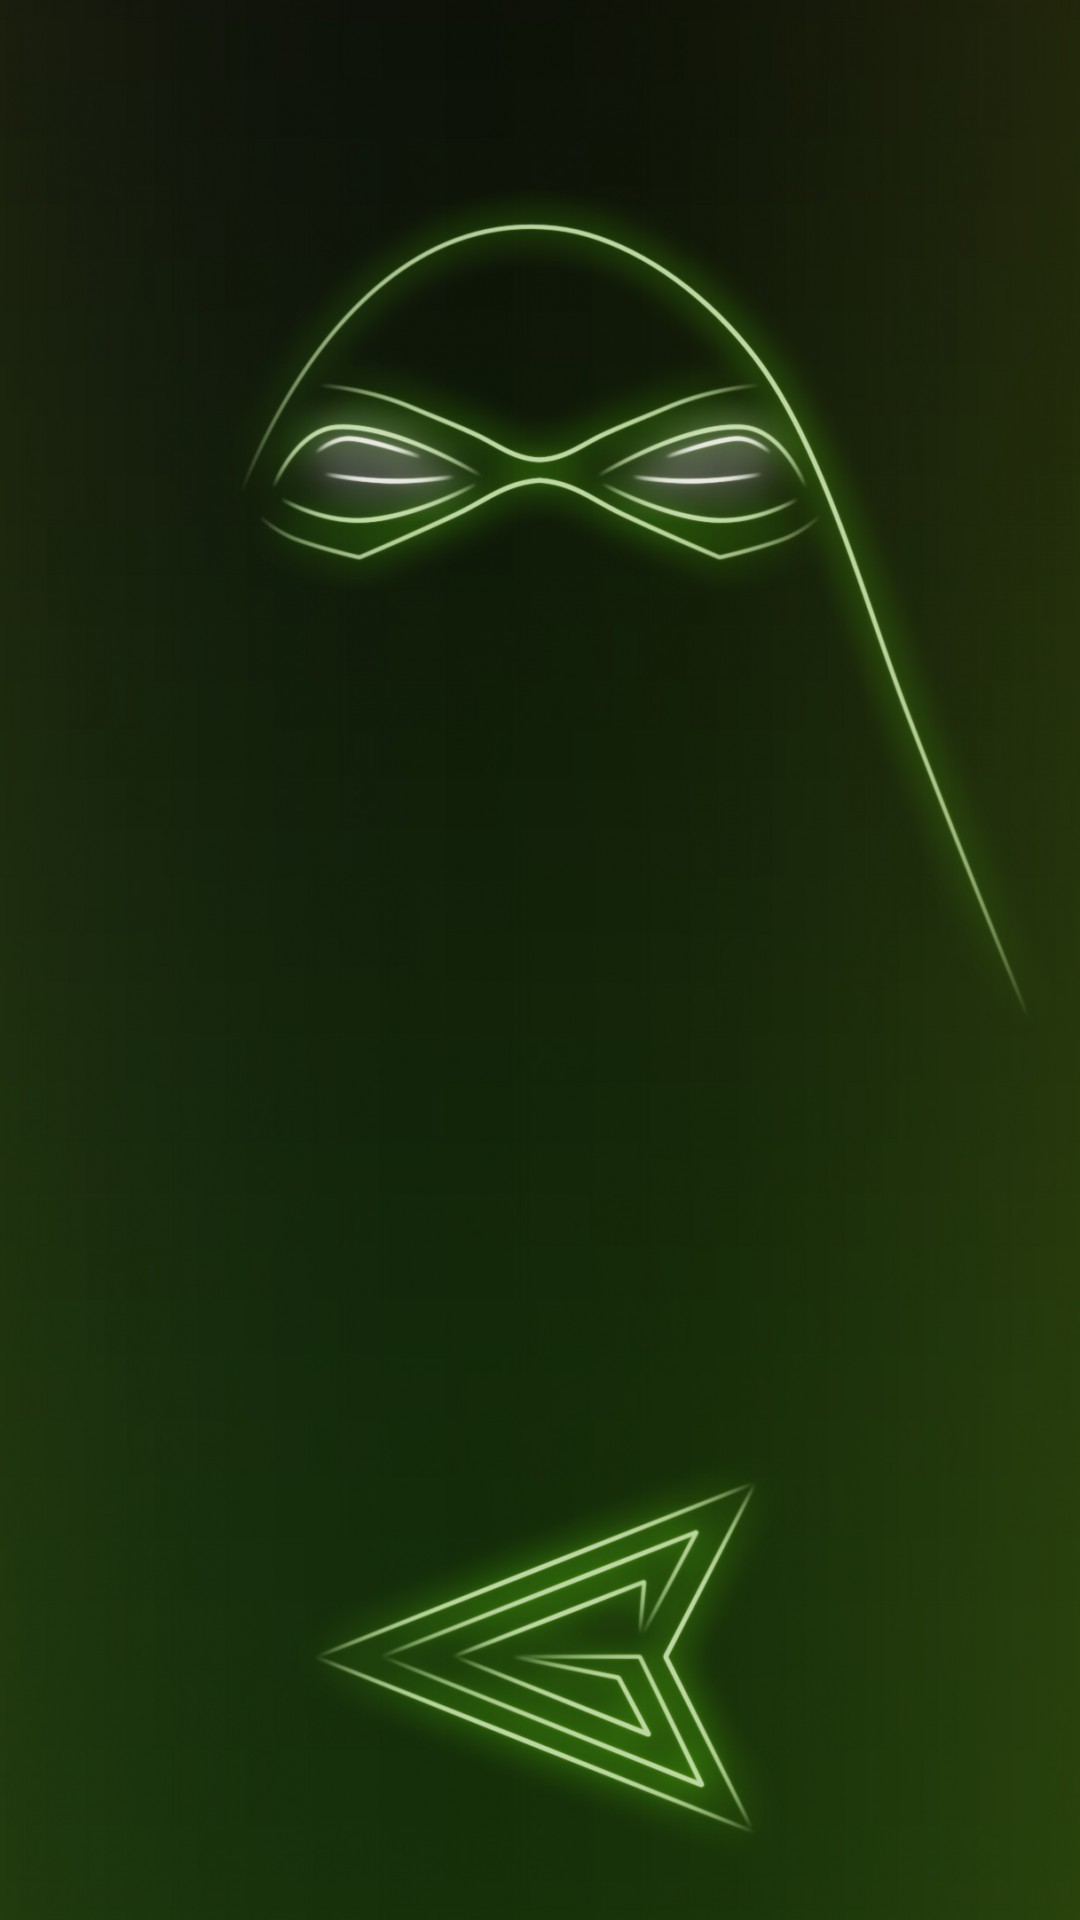 1080x1920 Download Neon Light Hero Green Arrow 1080 x 1920 Wallpapers - 4644309 -  neon light superhero